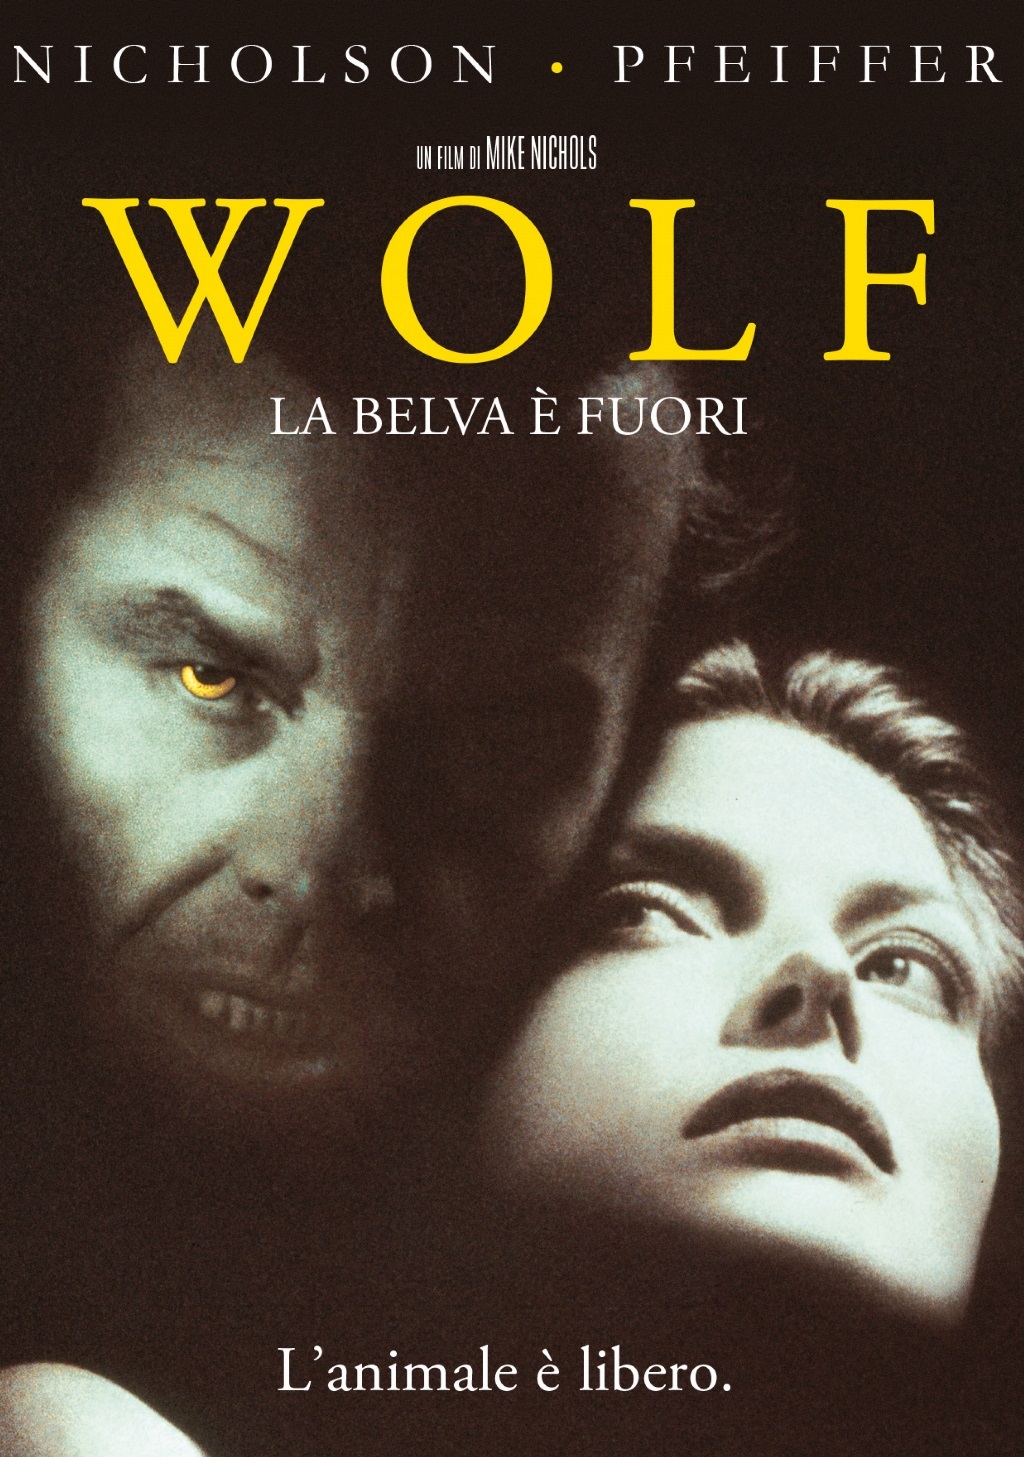 Wolf – La belva è fuori [HD] (1994)